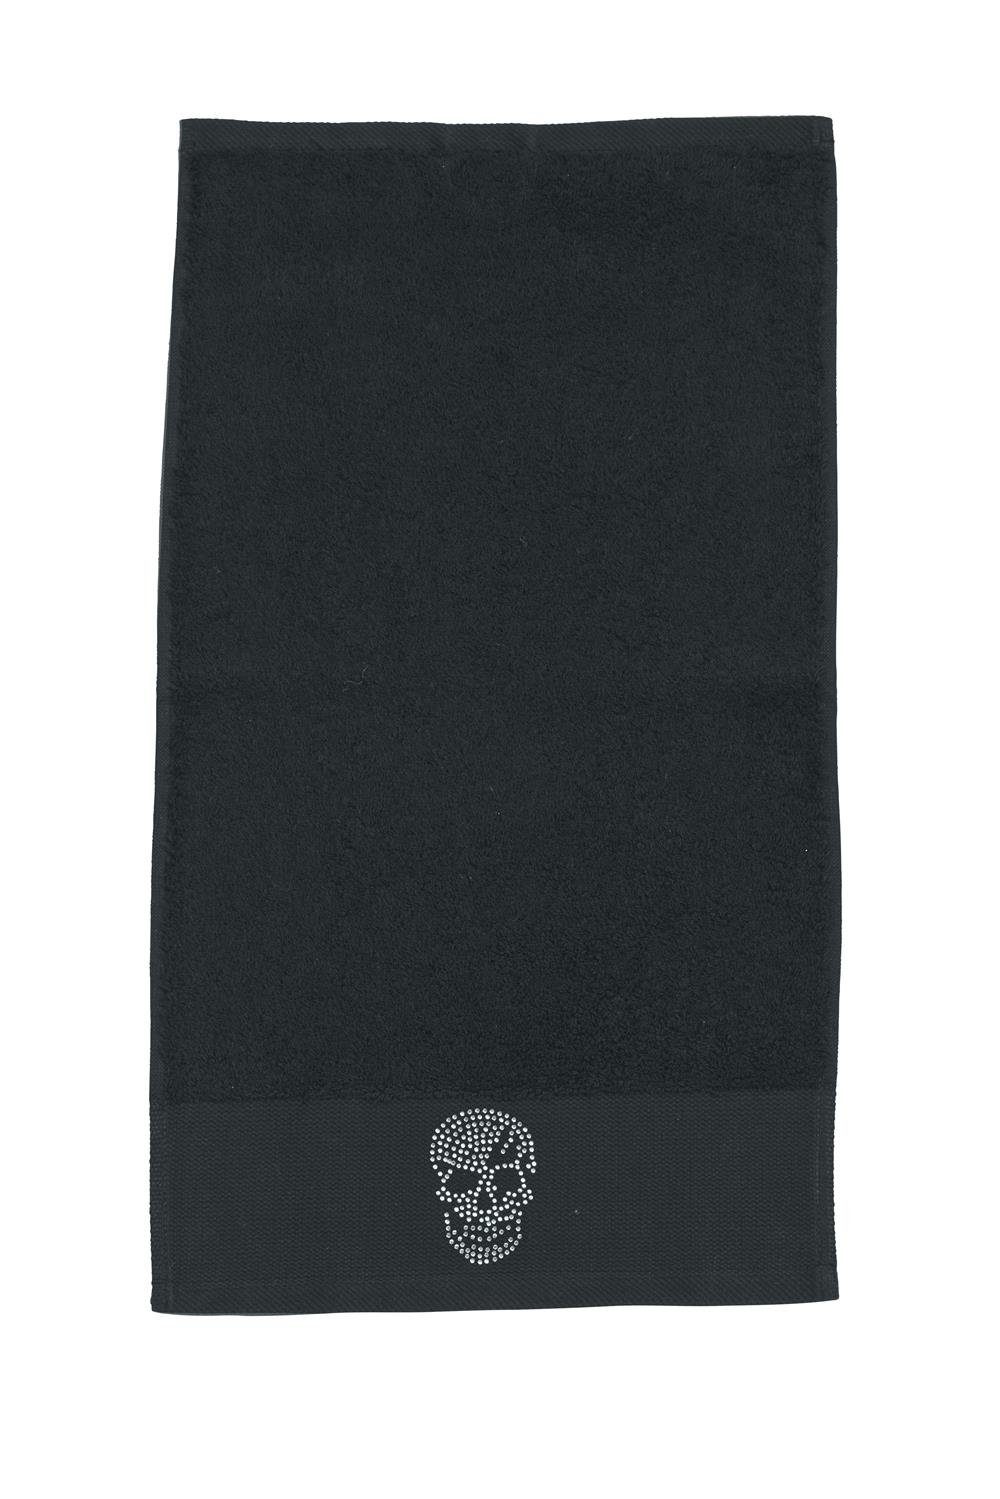 orange Handtuch the done.® Applikation Bad, 50x100cm Strasssteine Totenkopf Totenkopf Baumwolle schwarz Handtuch difference Skull (1-St), fürs